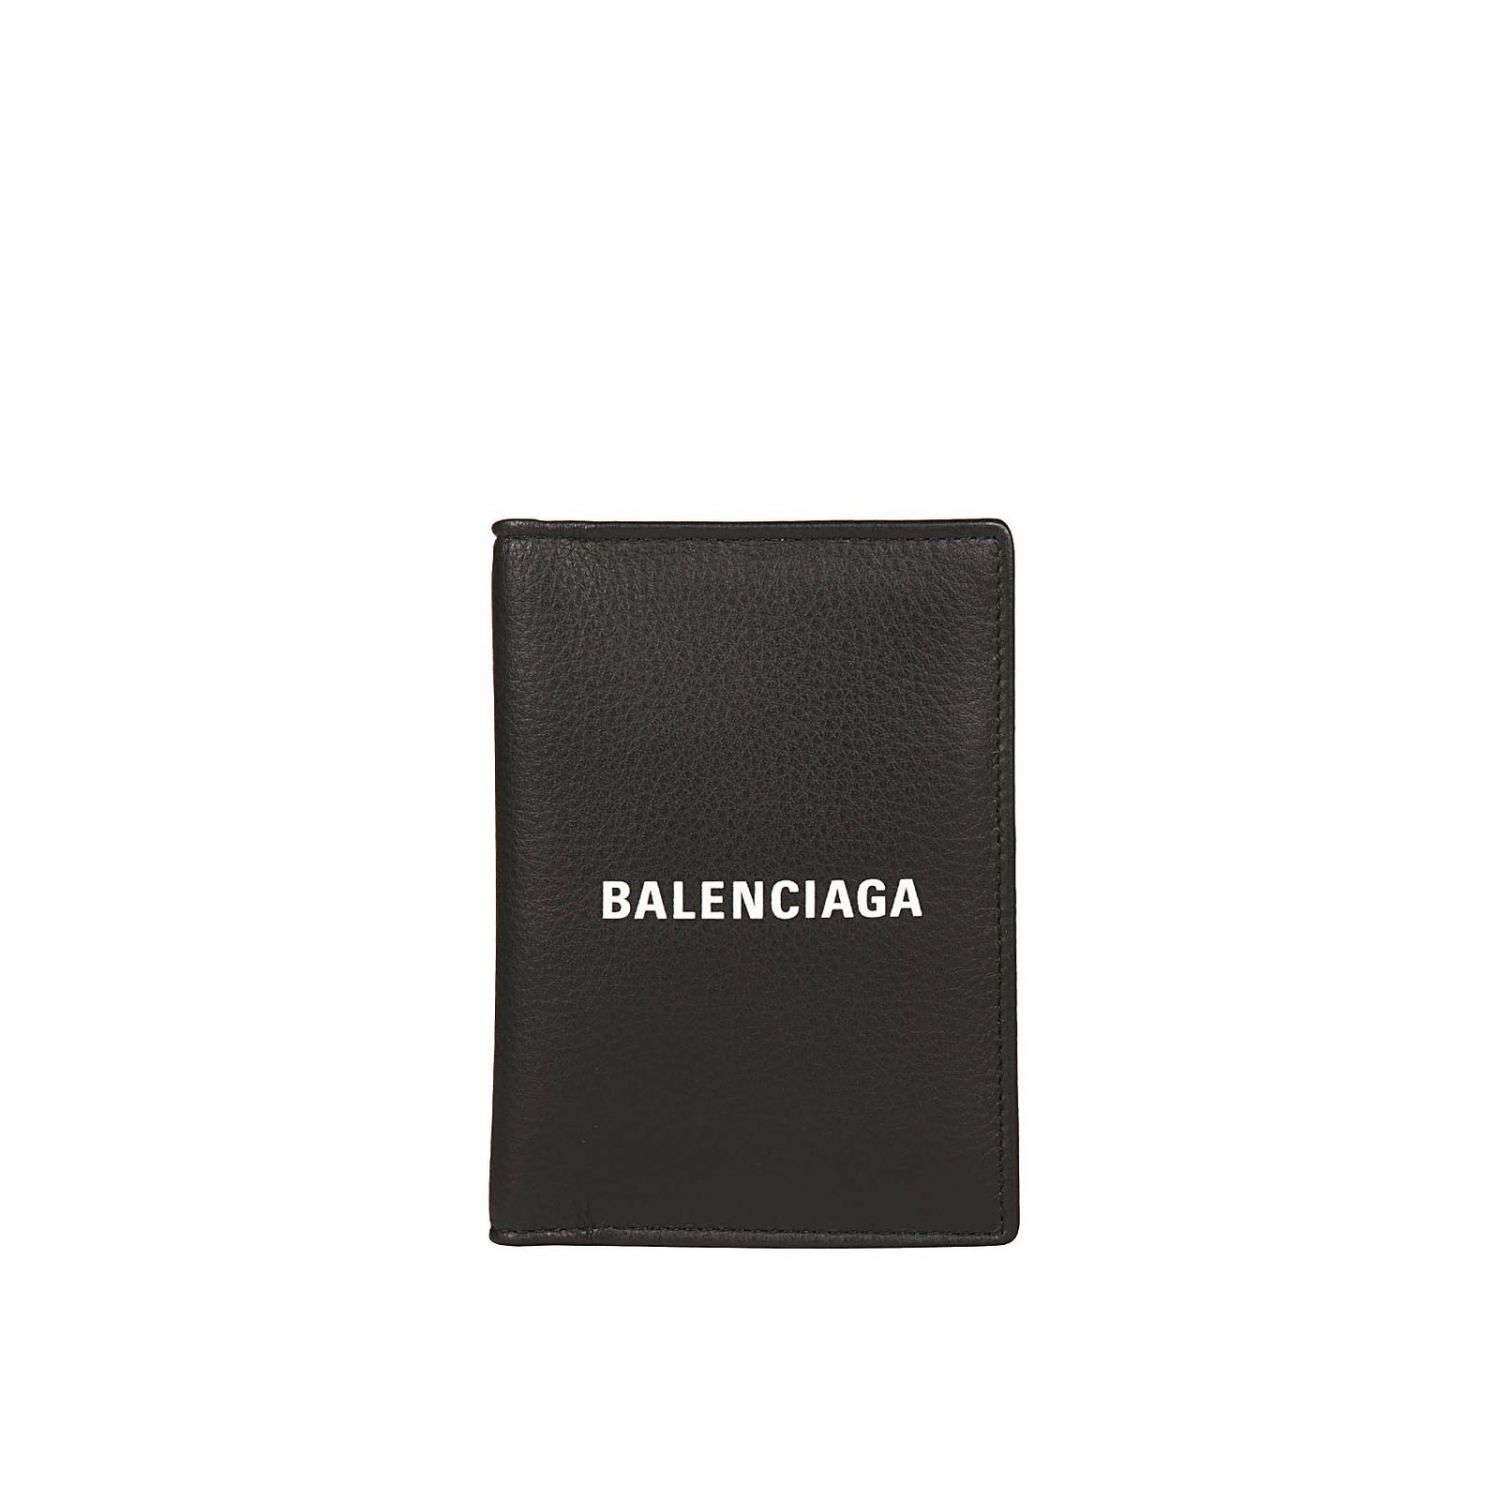 Wallet women Balenciaga | Wallet Balenciaga Women Black | Wallet ...